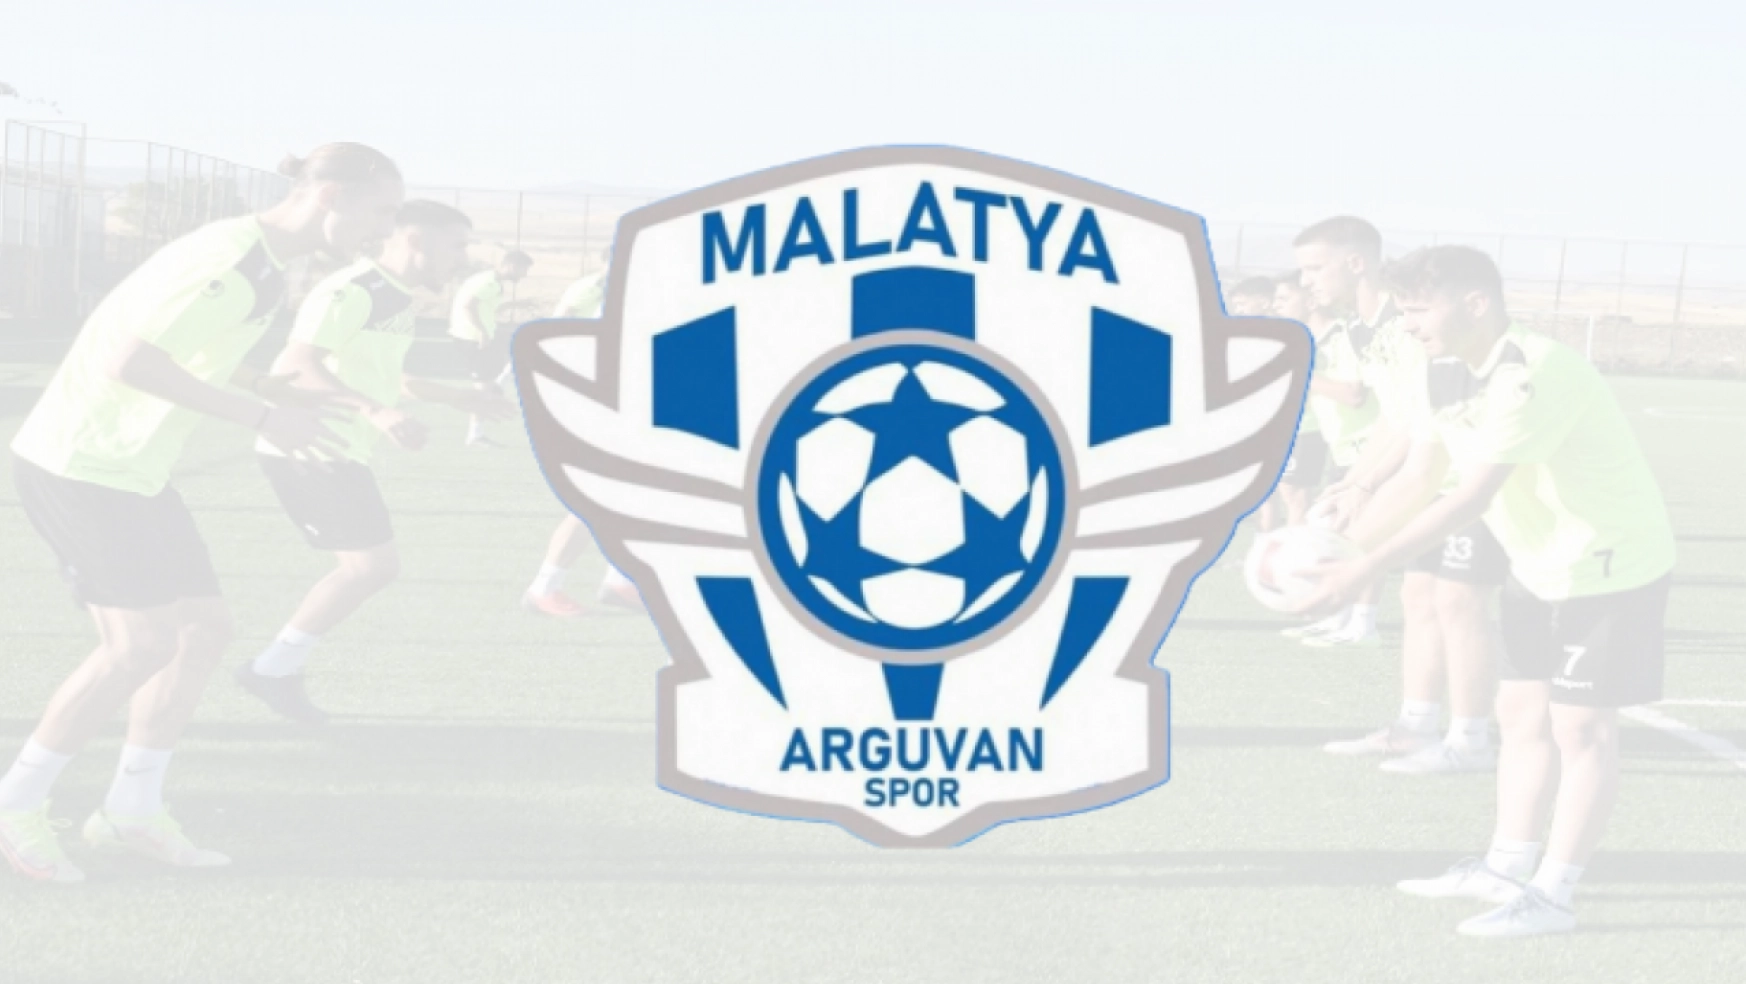 Malatya Arguvan Spor'dan Basın açıklaması